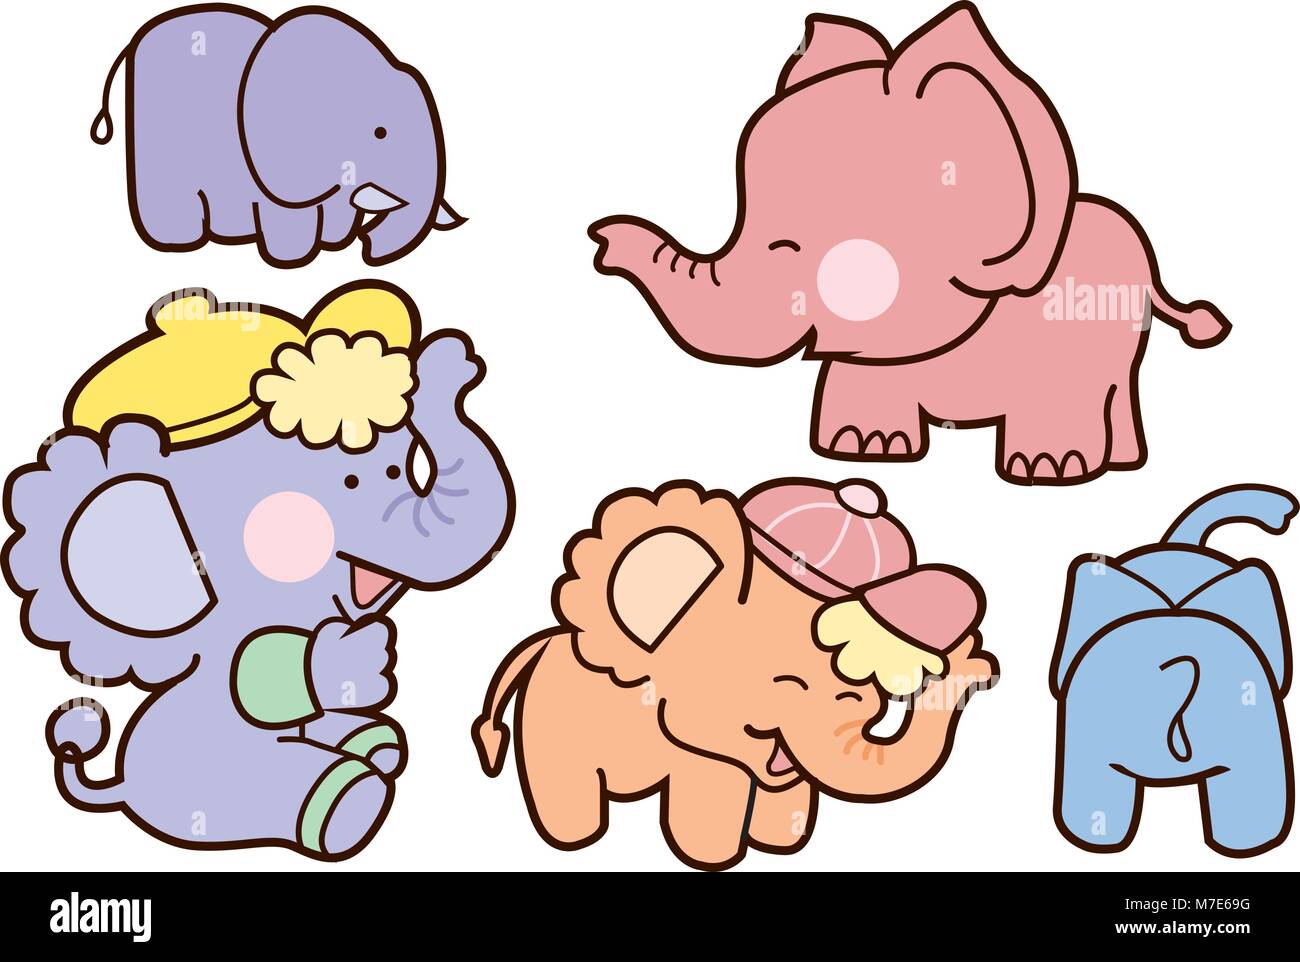 Familie Elefant Cartoon Character Design. Niedliche Tier Abbildung auf weißen isolieren. Stock Vektor